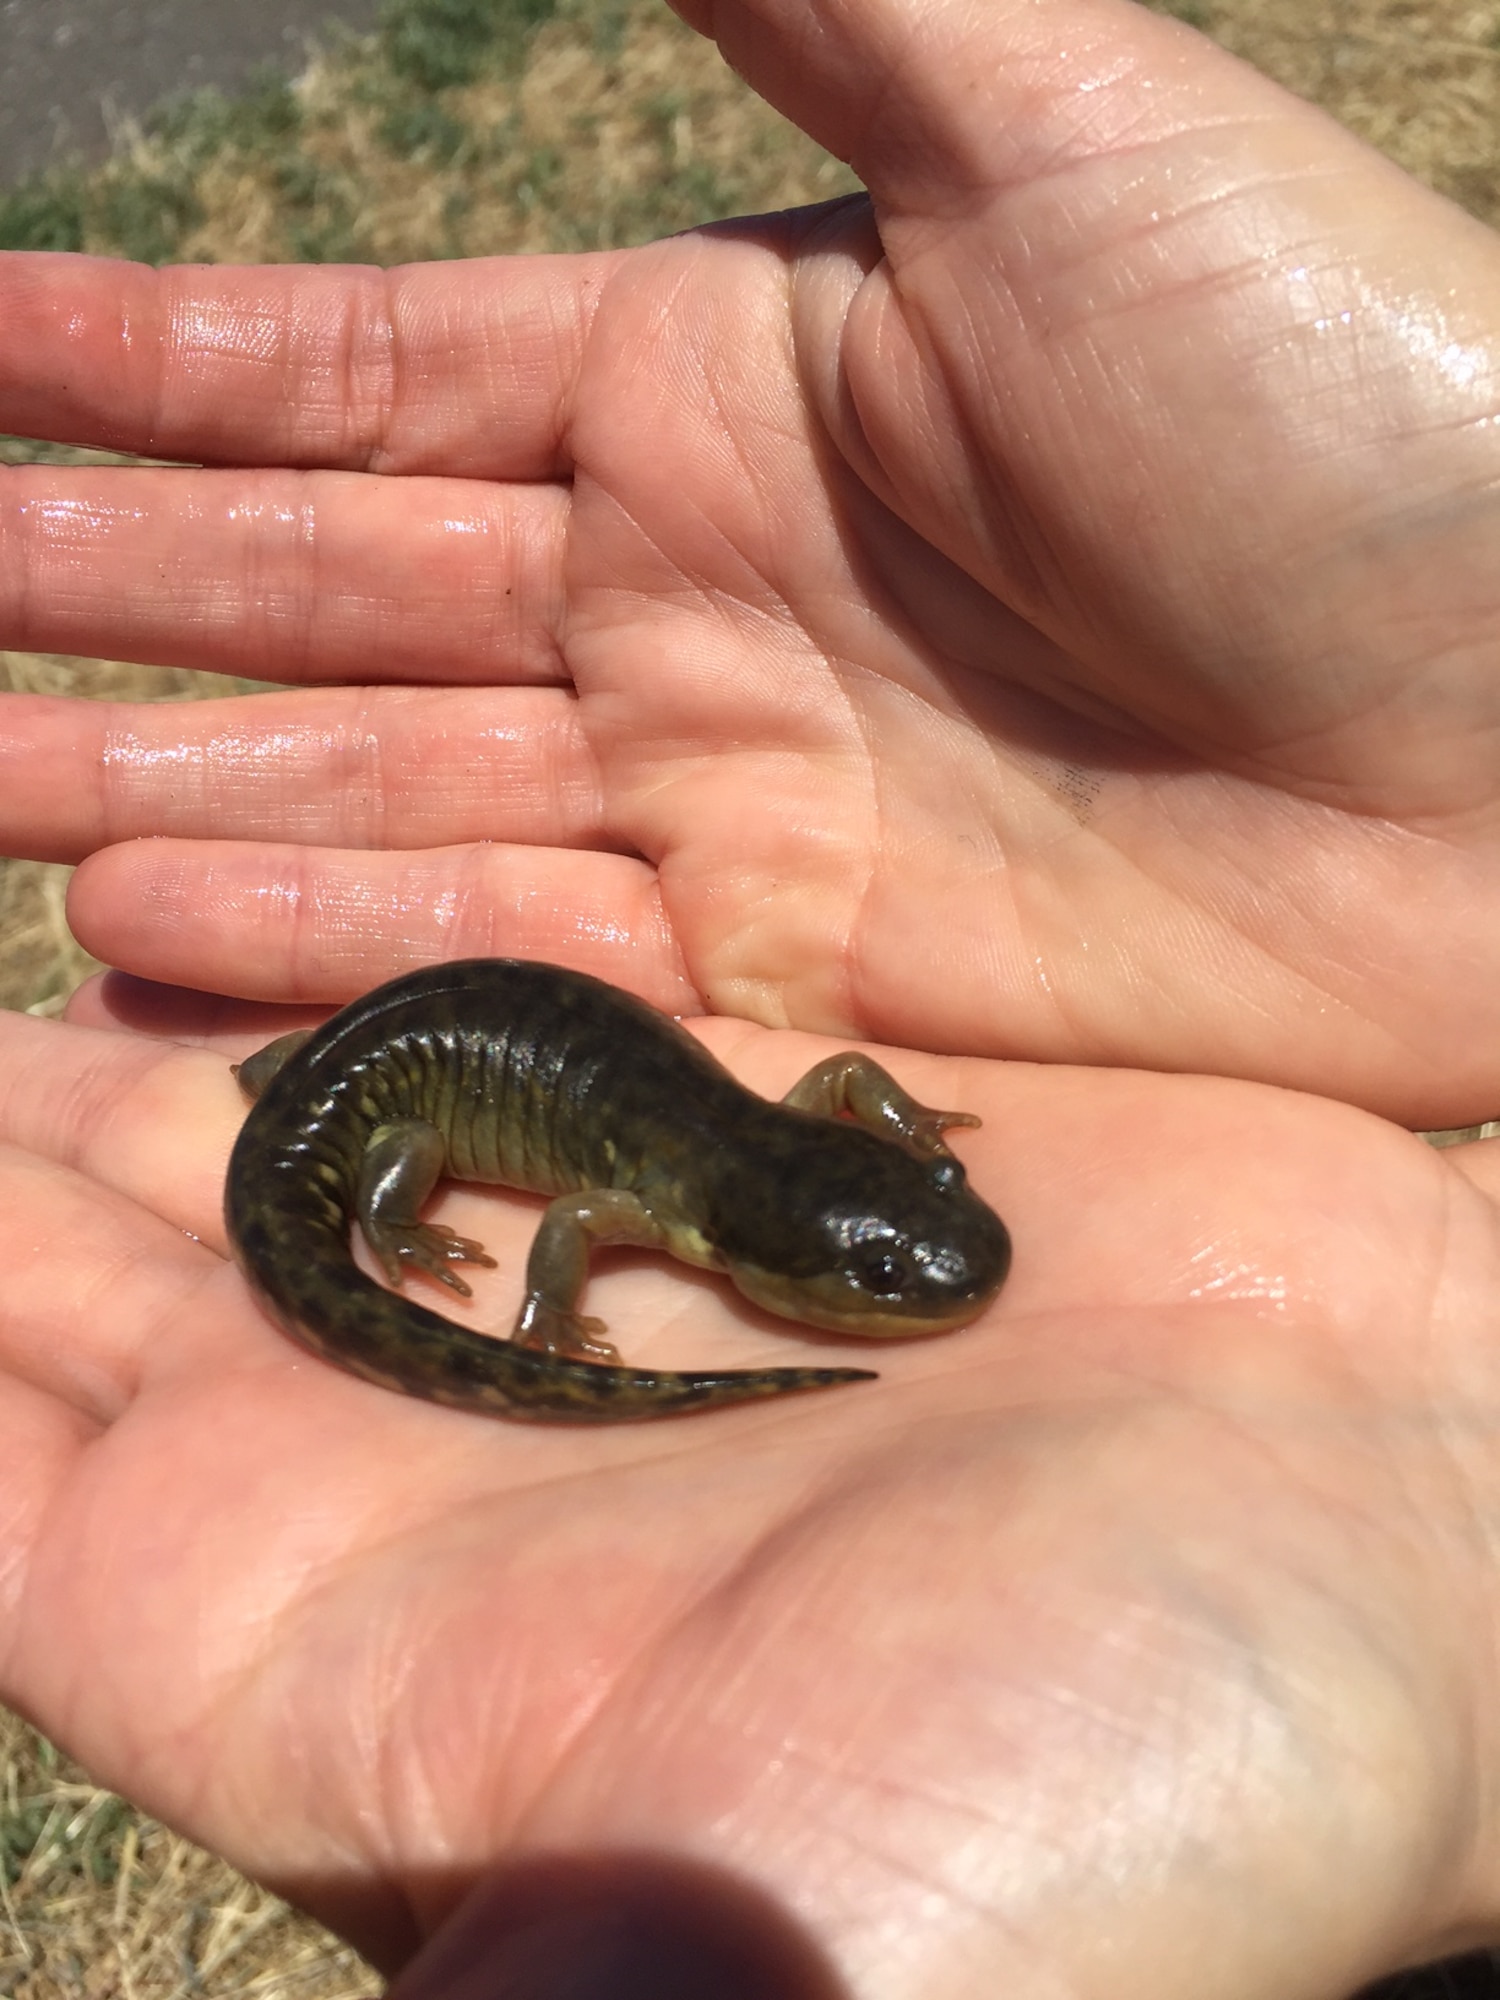 baby tiger salamander